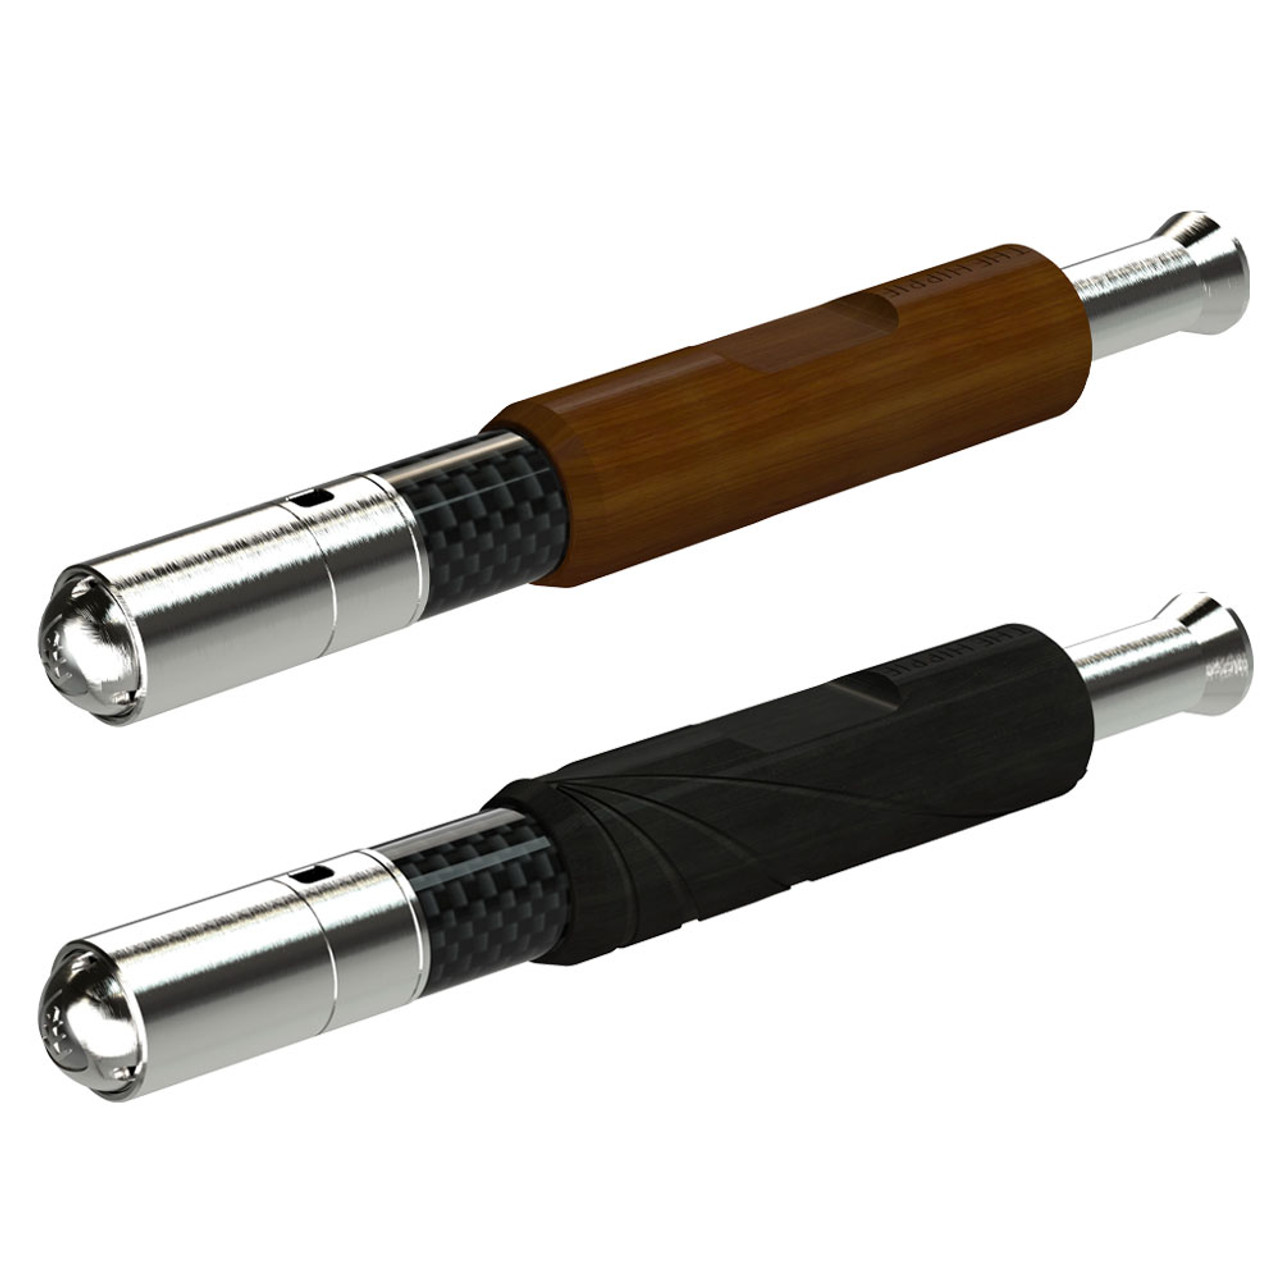 handheld vaporizer pen pipes